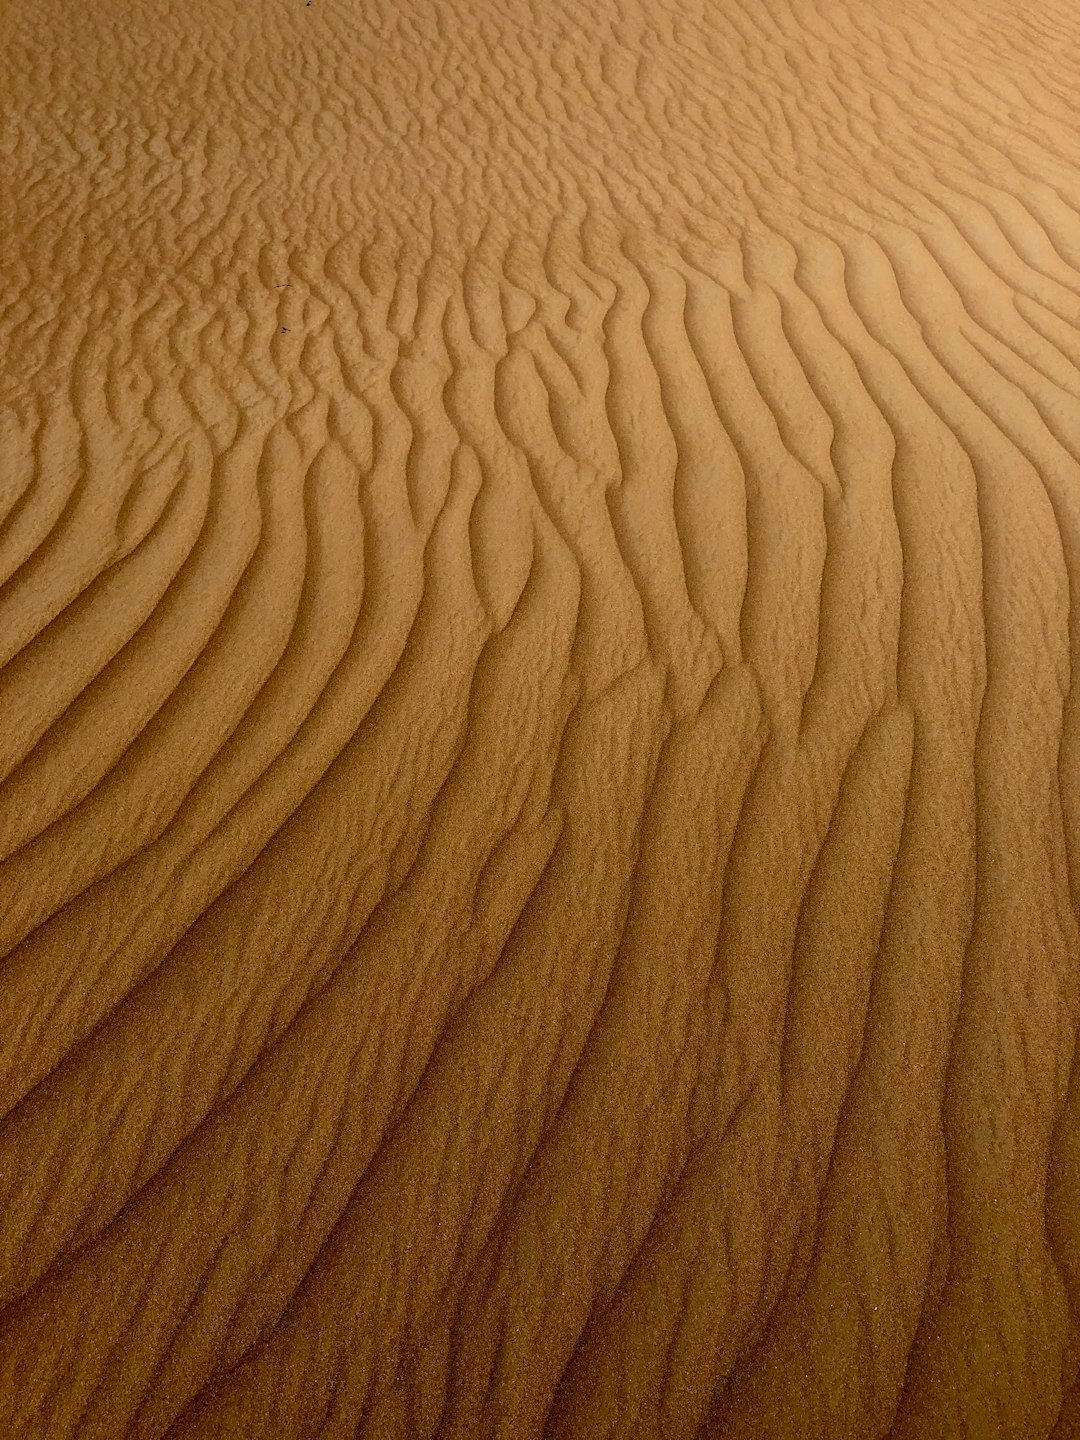 Desert photo spot Margham Sharjah